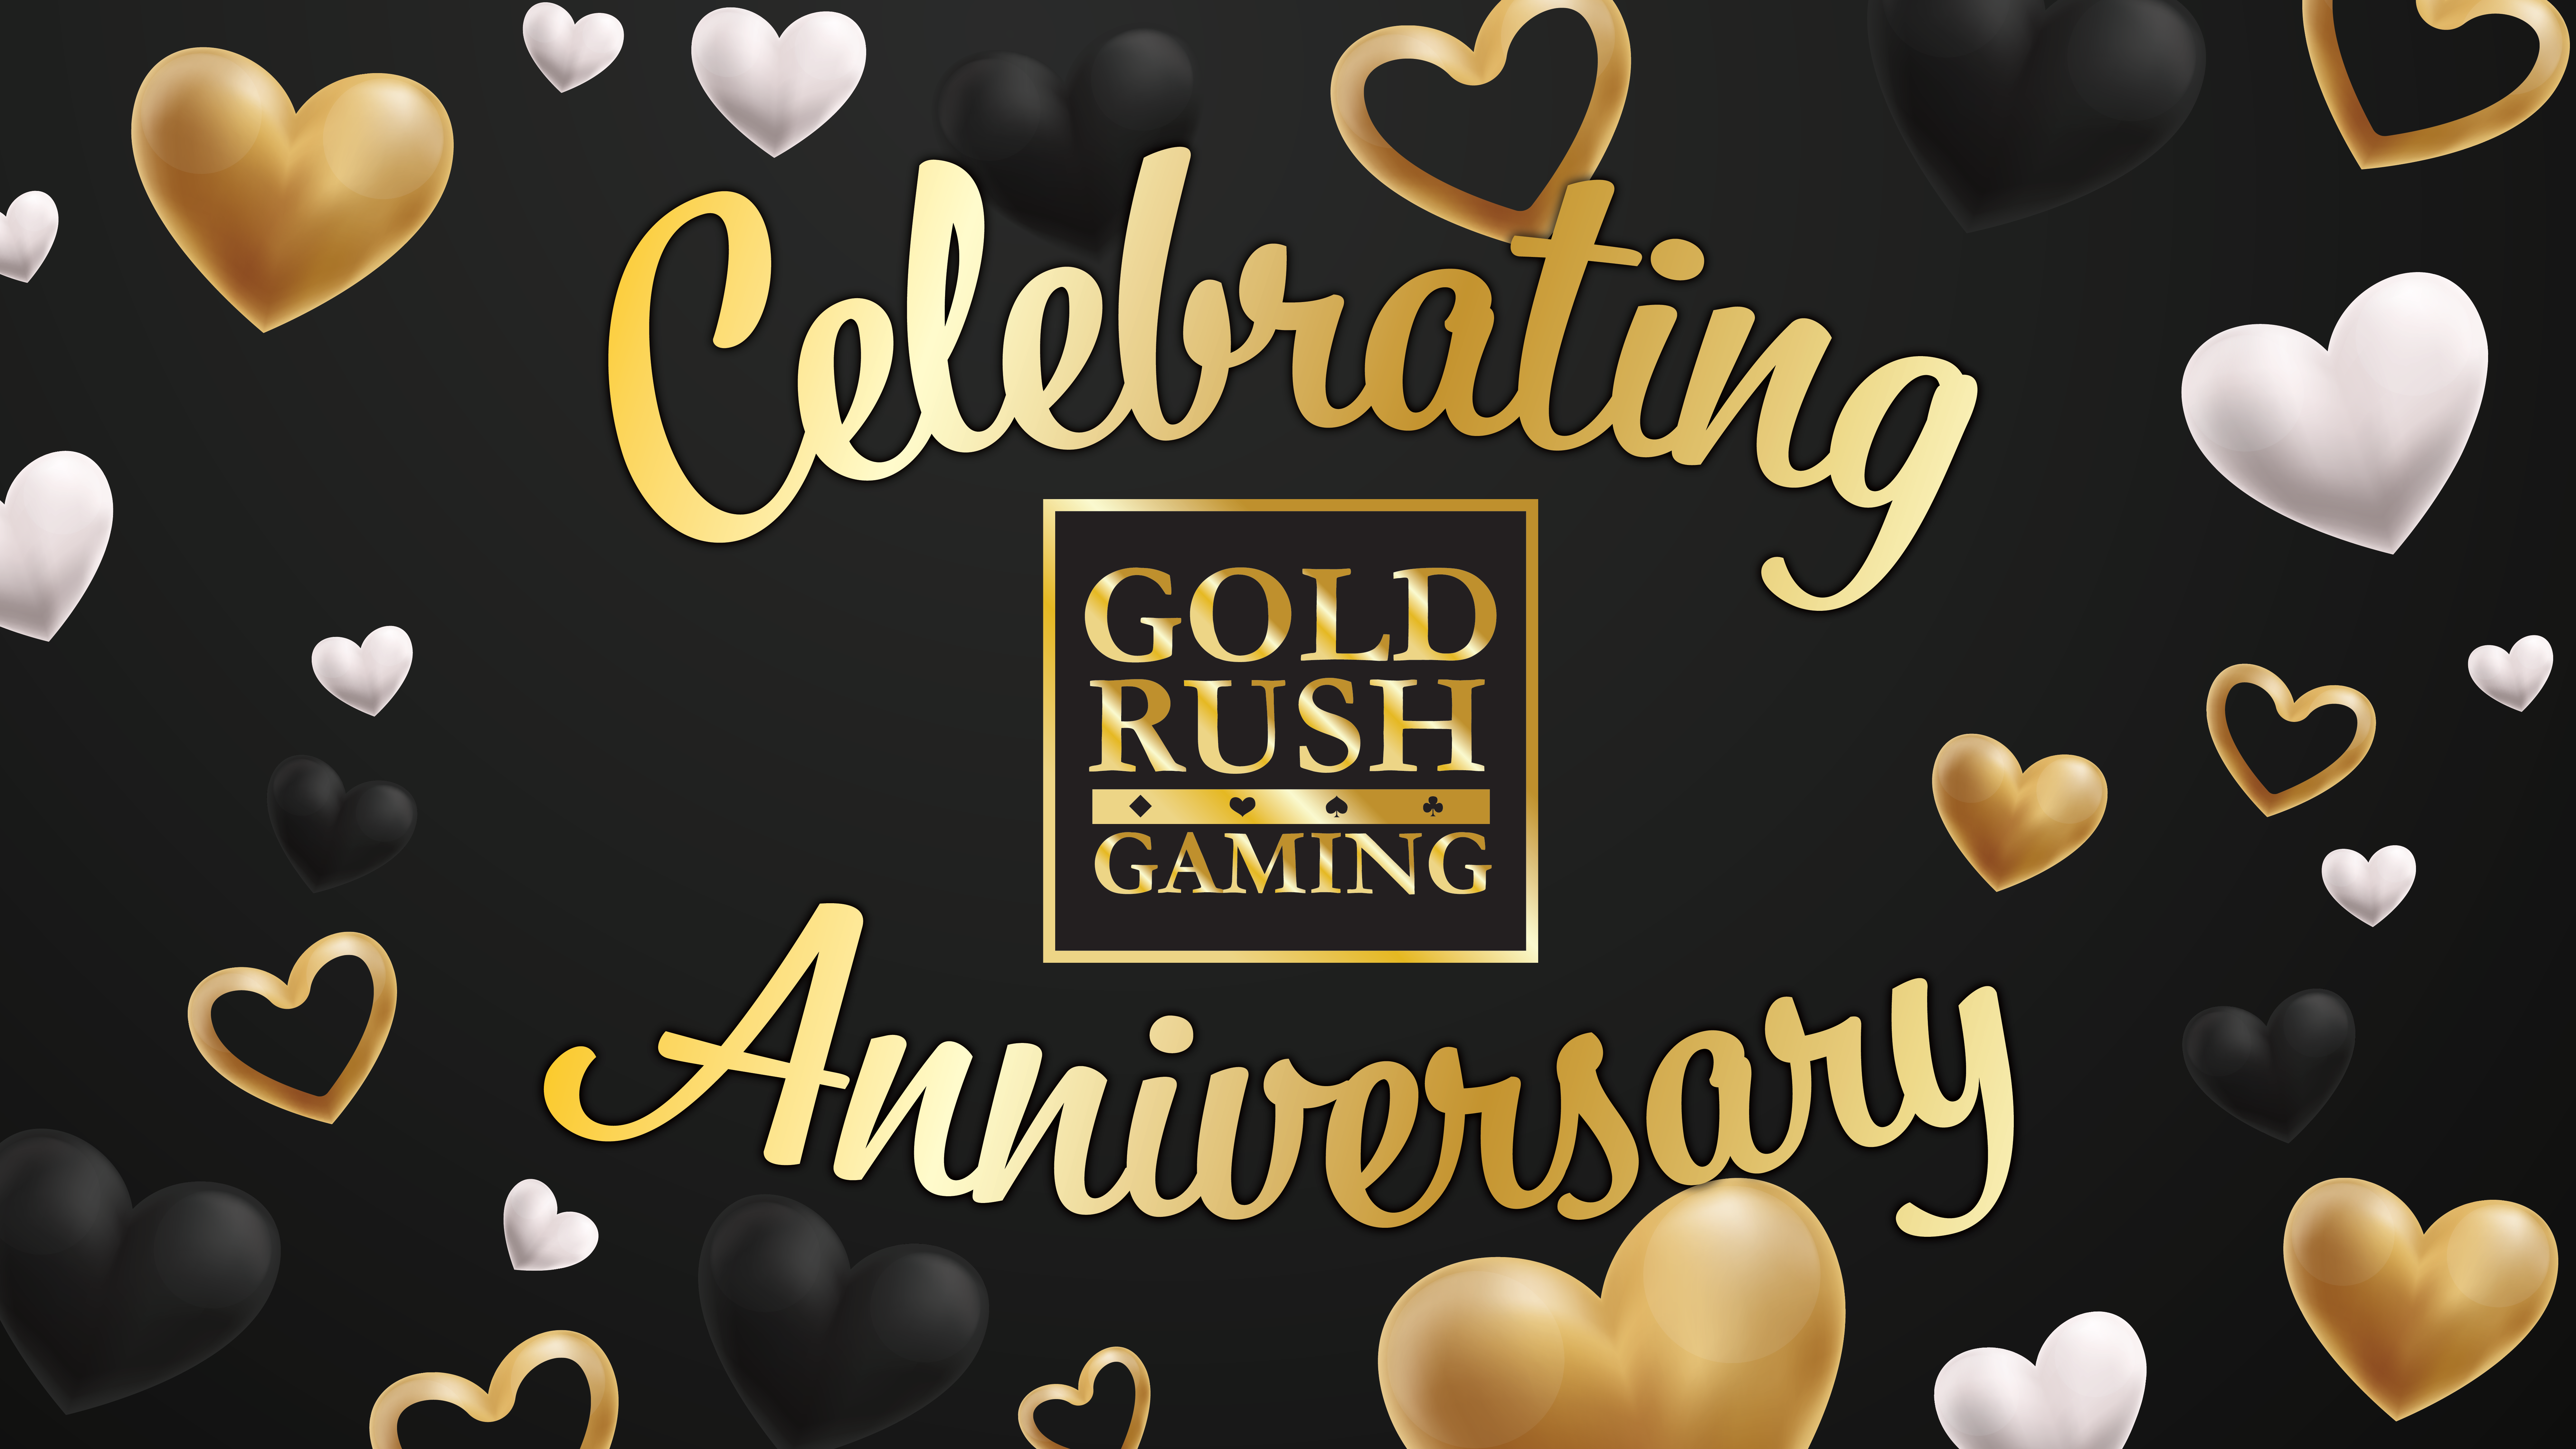 Gold Rush Gaming - Partner Anniversaries